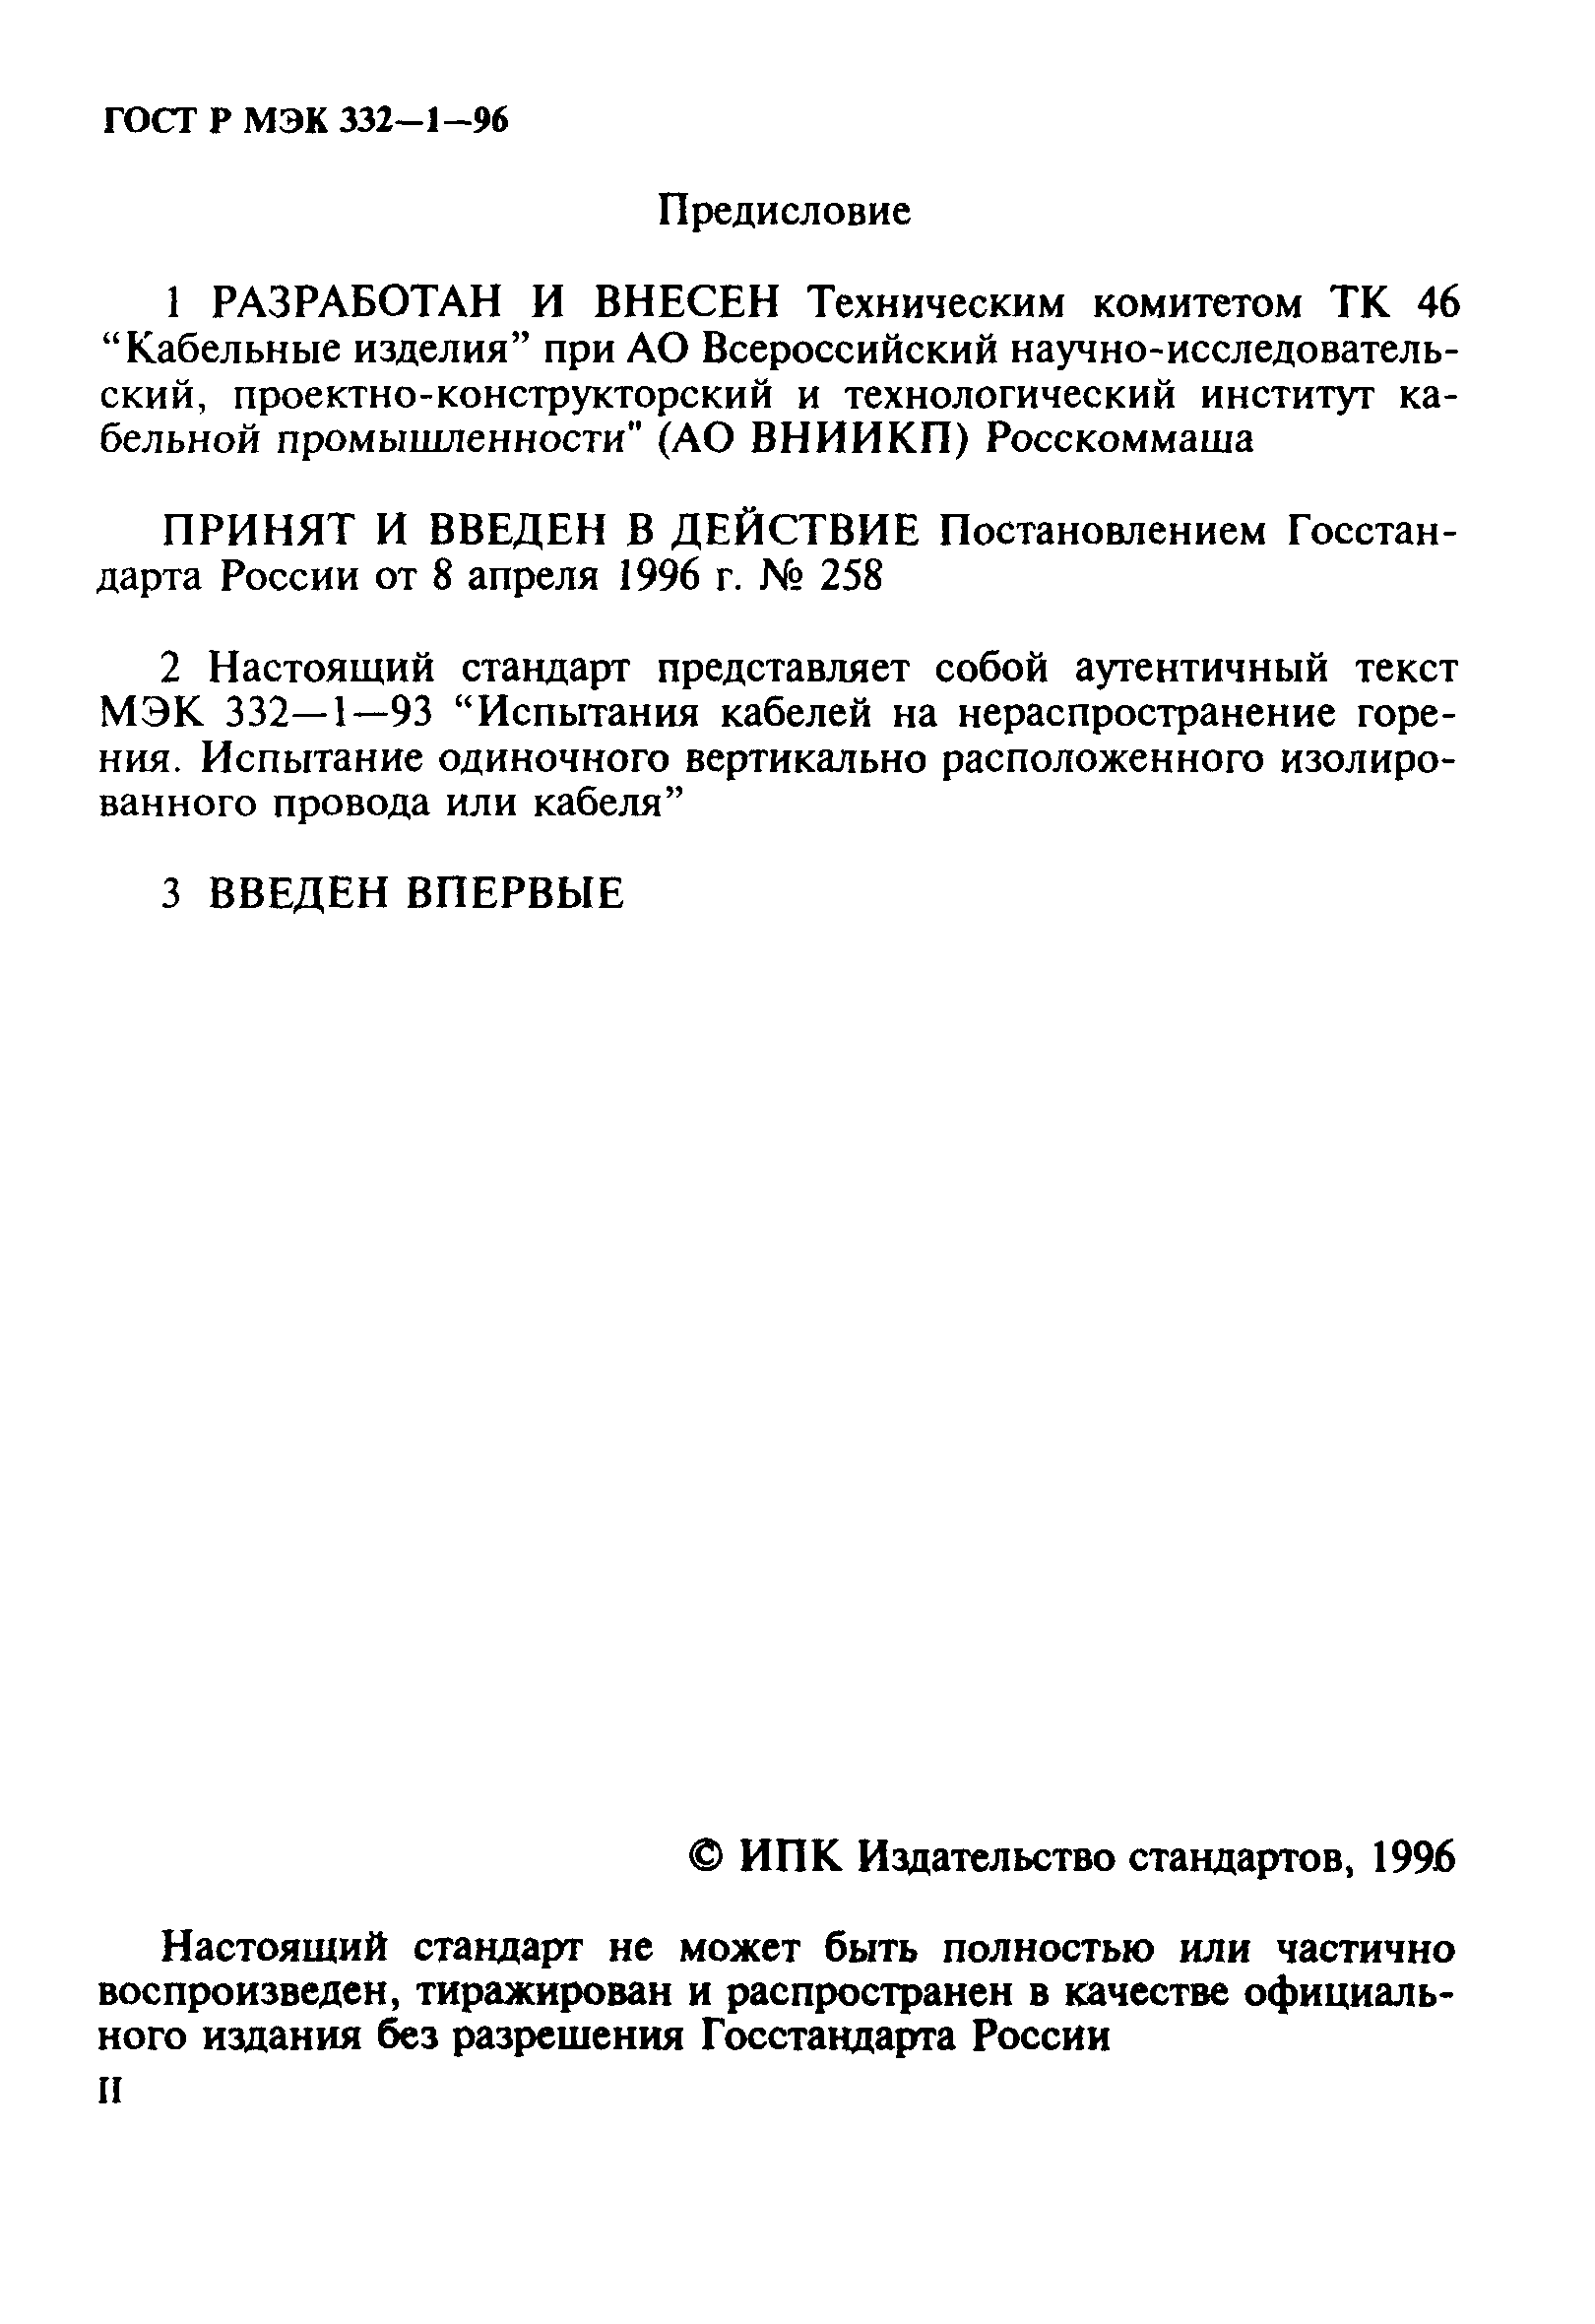 ГОСТ Р МЭК 332-1-96